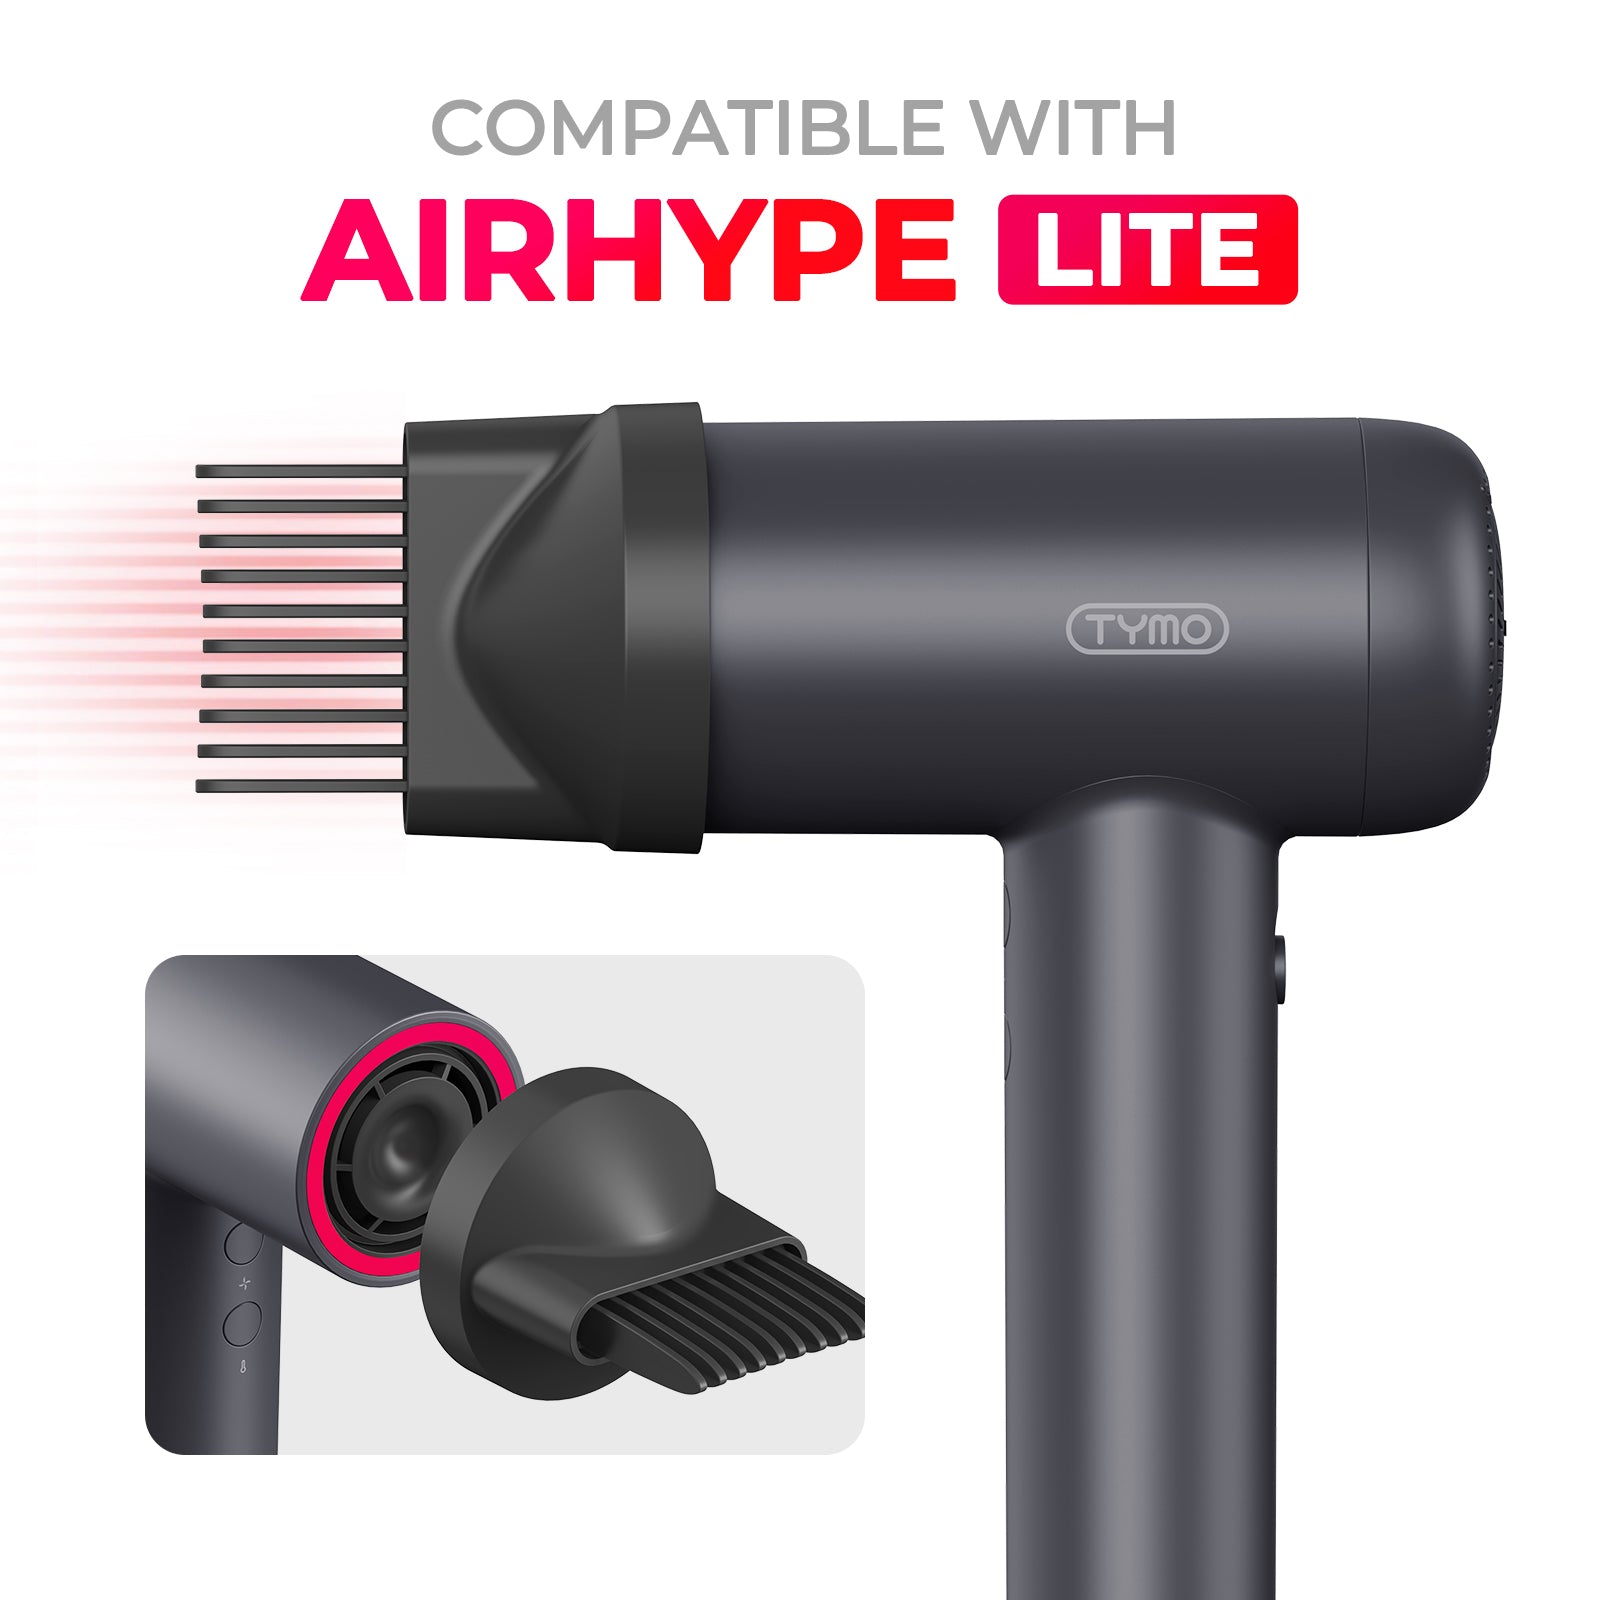 Comb Nozzle for TYMO AIRHYPE LITE Dryer